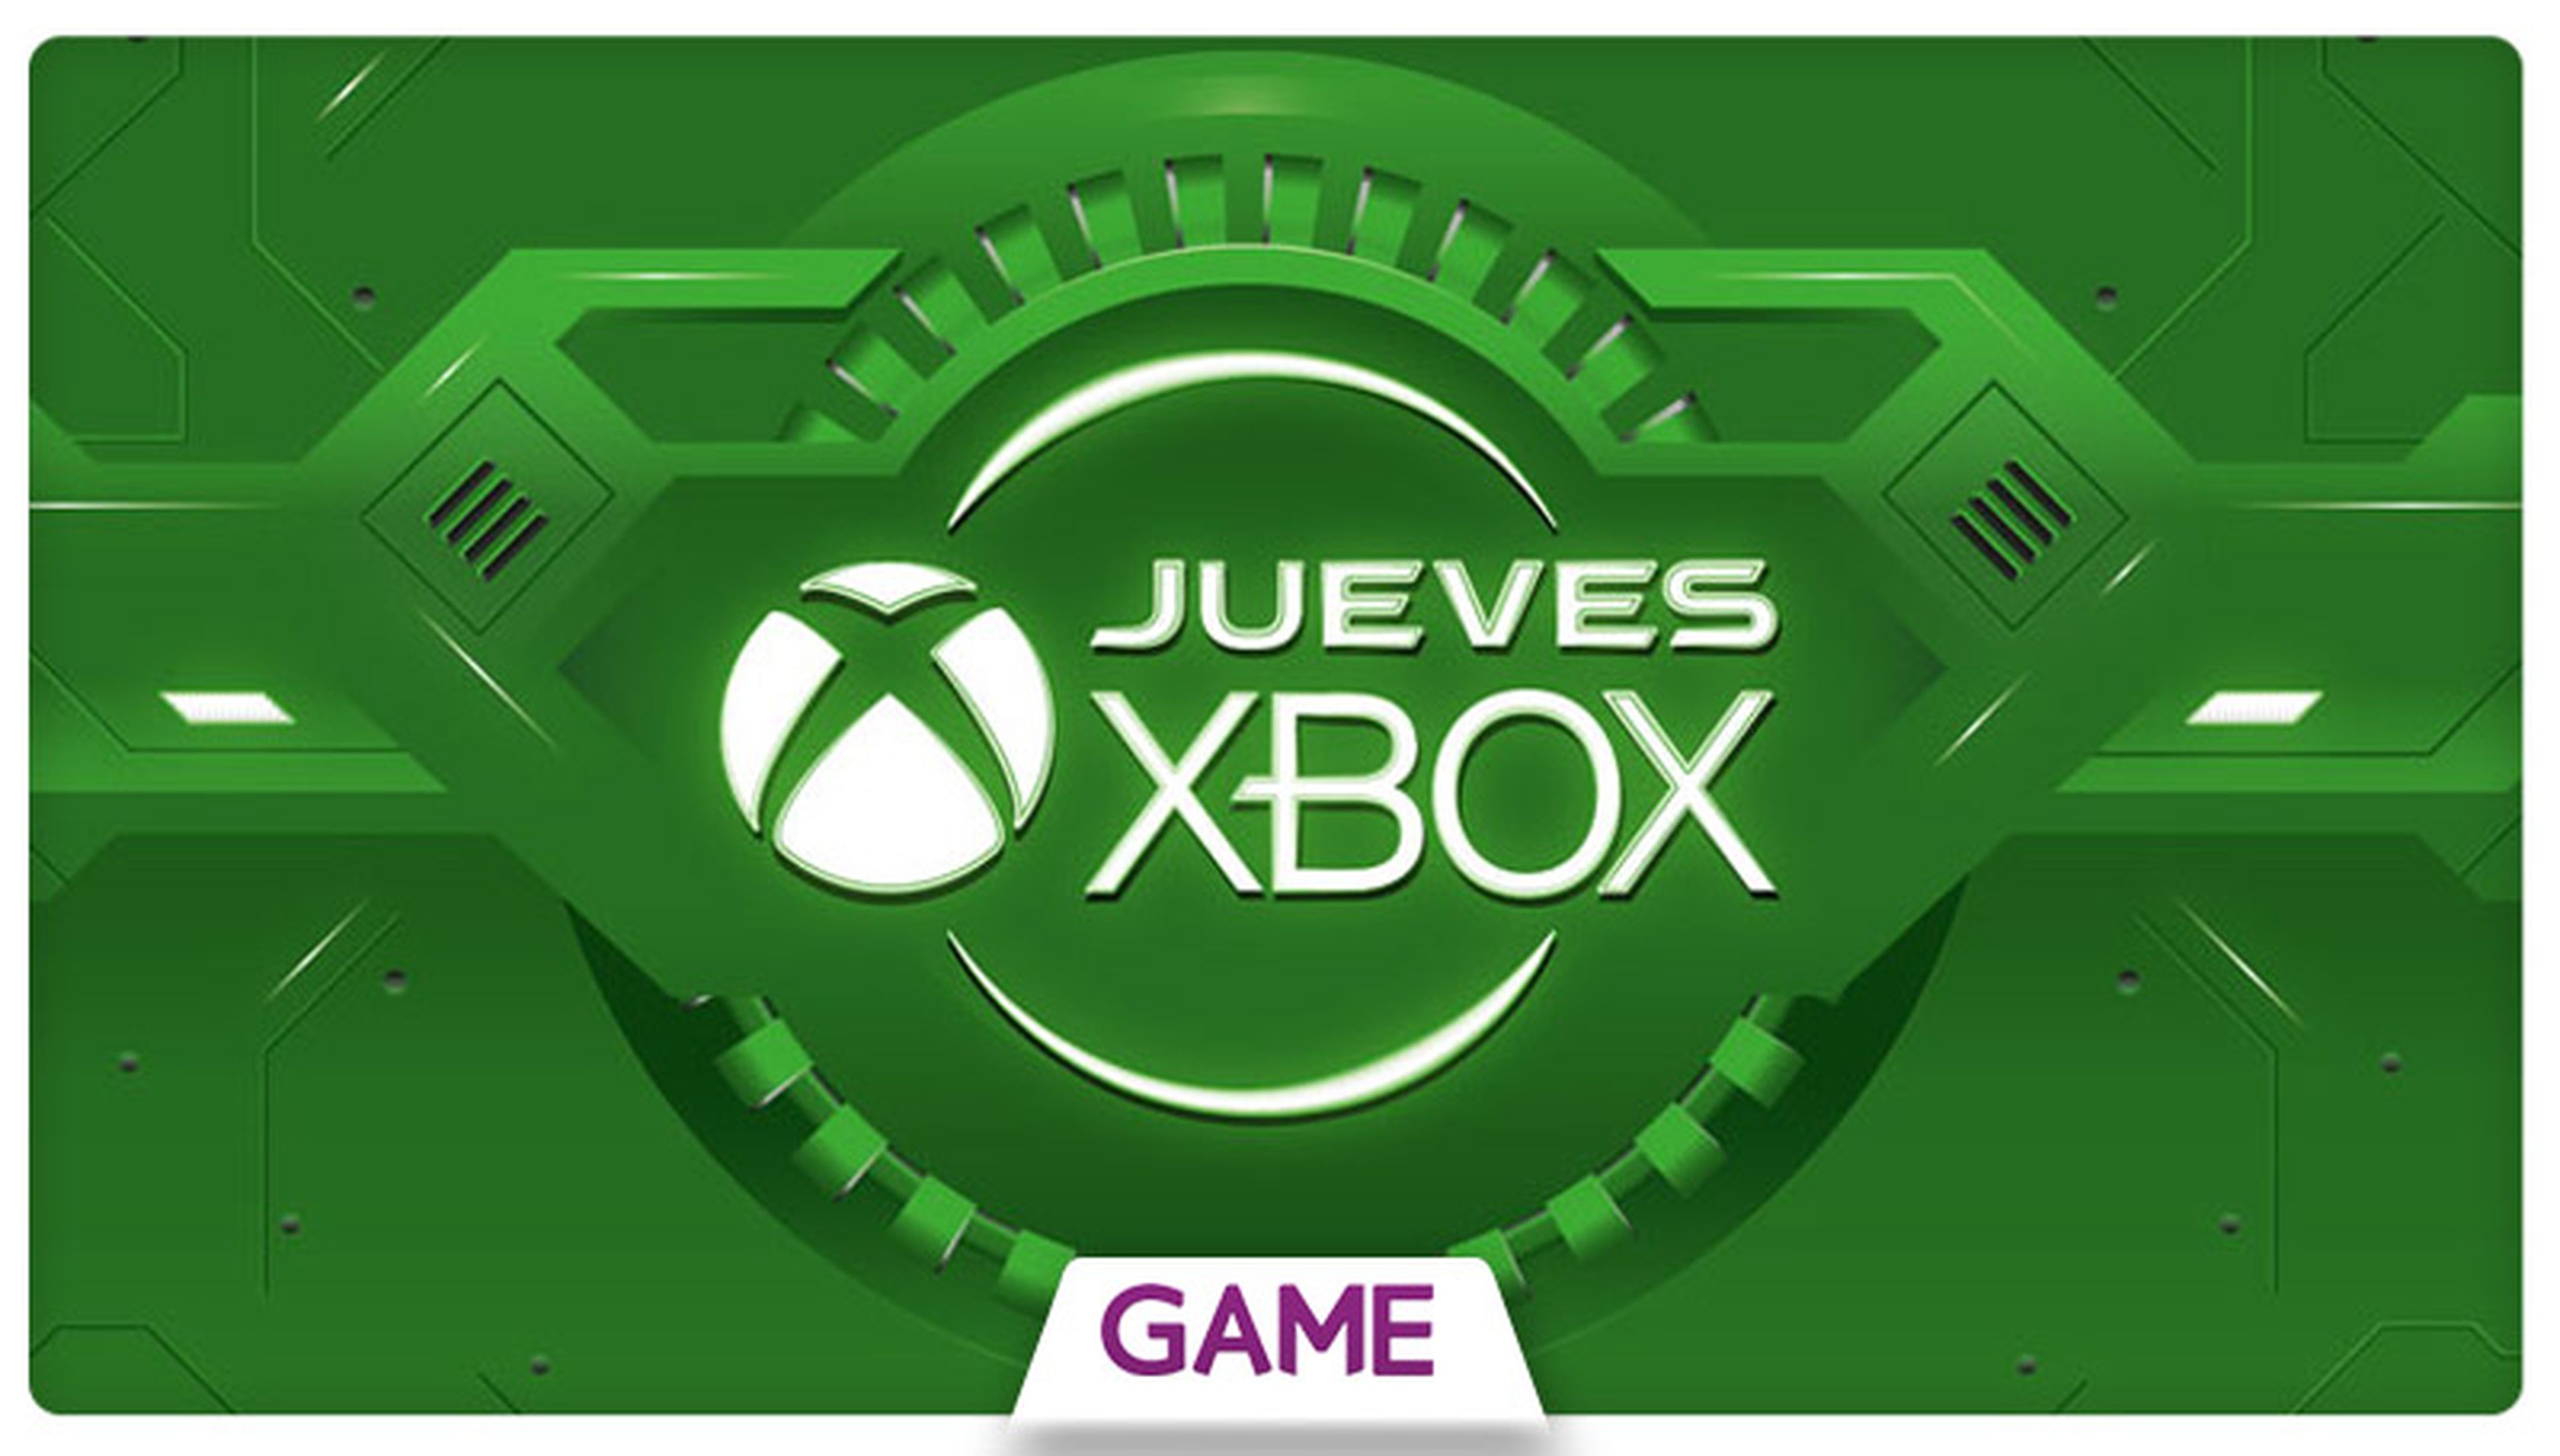 Jueves Xbox en GAME: Ofertas del 10/12/2015